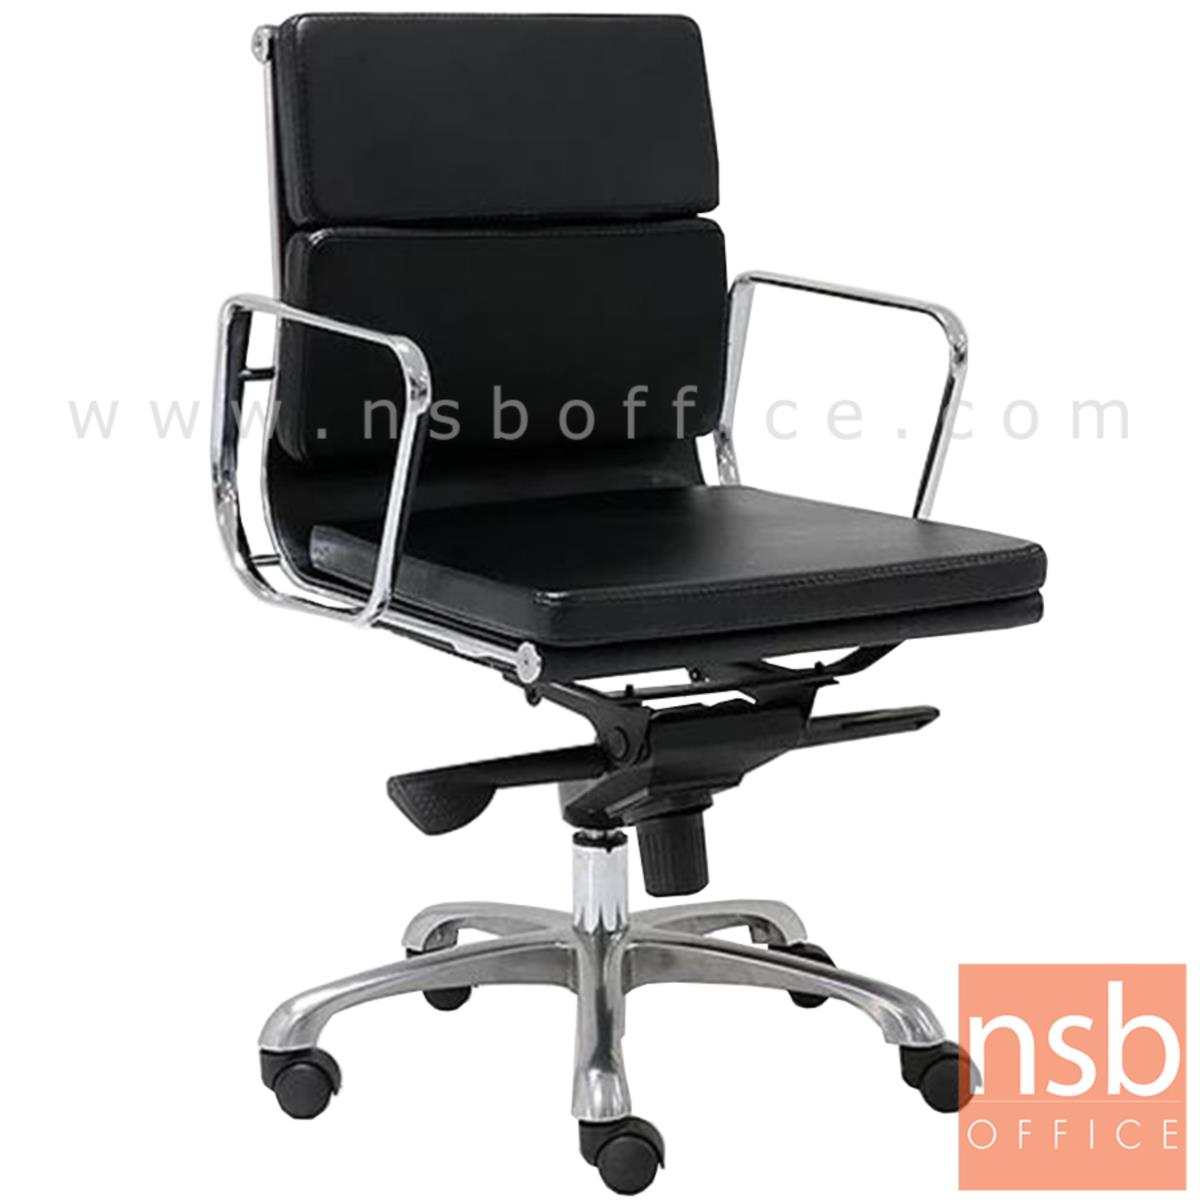 B03A304:เก้าอี้สำนักงาน รุ่น Mapother (เมบอเธอร์)  โช๊คแก๊ส มีก้อนโยก ขาเหล็กชุบโครเมี่ยม